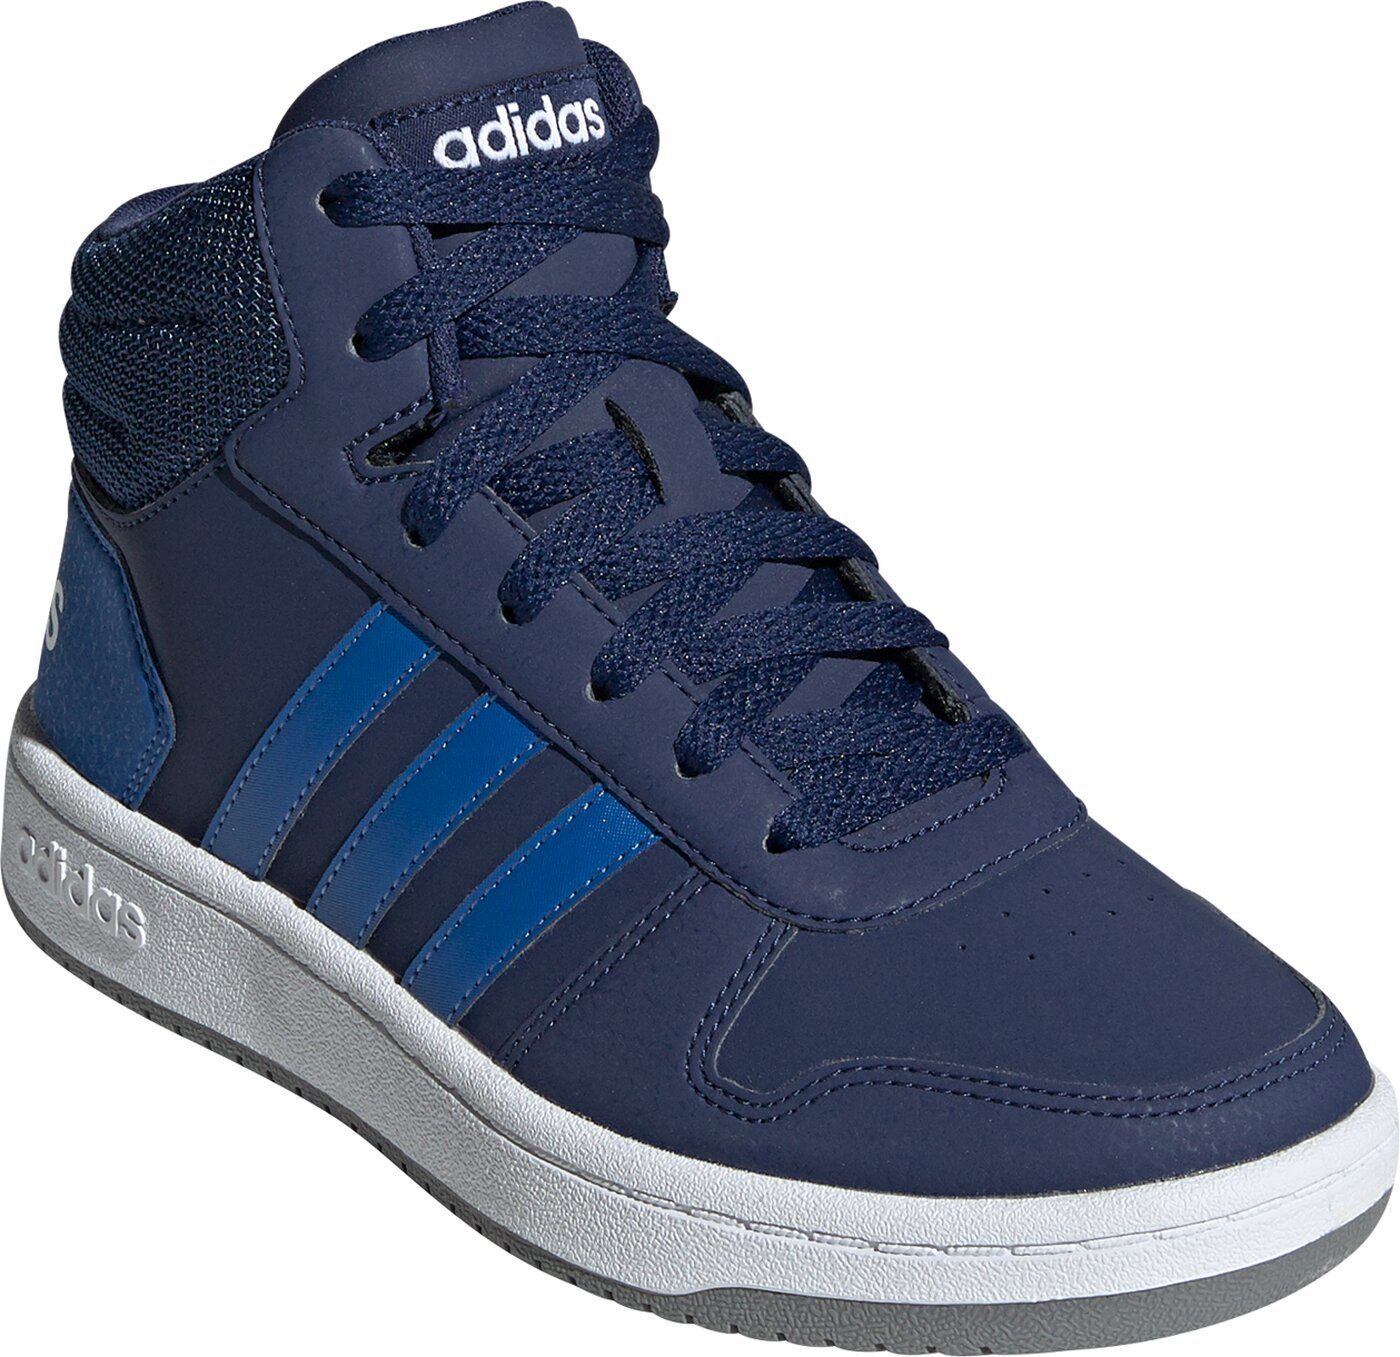 DKBLUE/BLUE/FTWWHT Basketballschuh HOOPS K Sportswear MID adidas 2.0